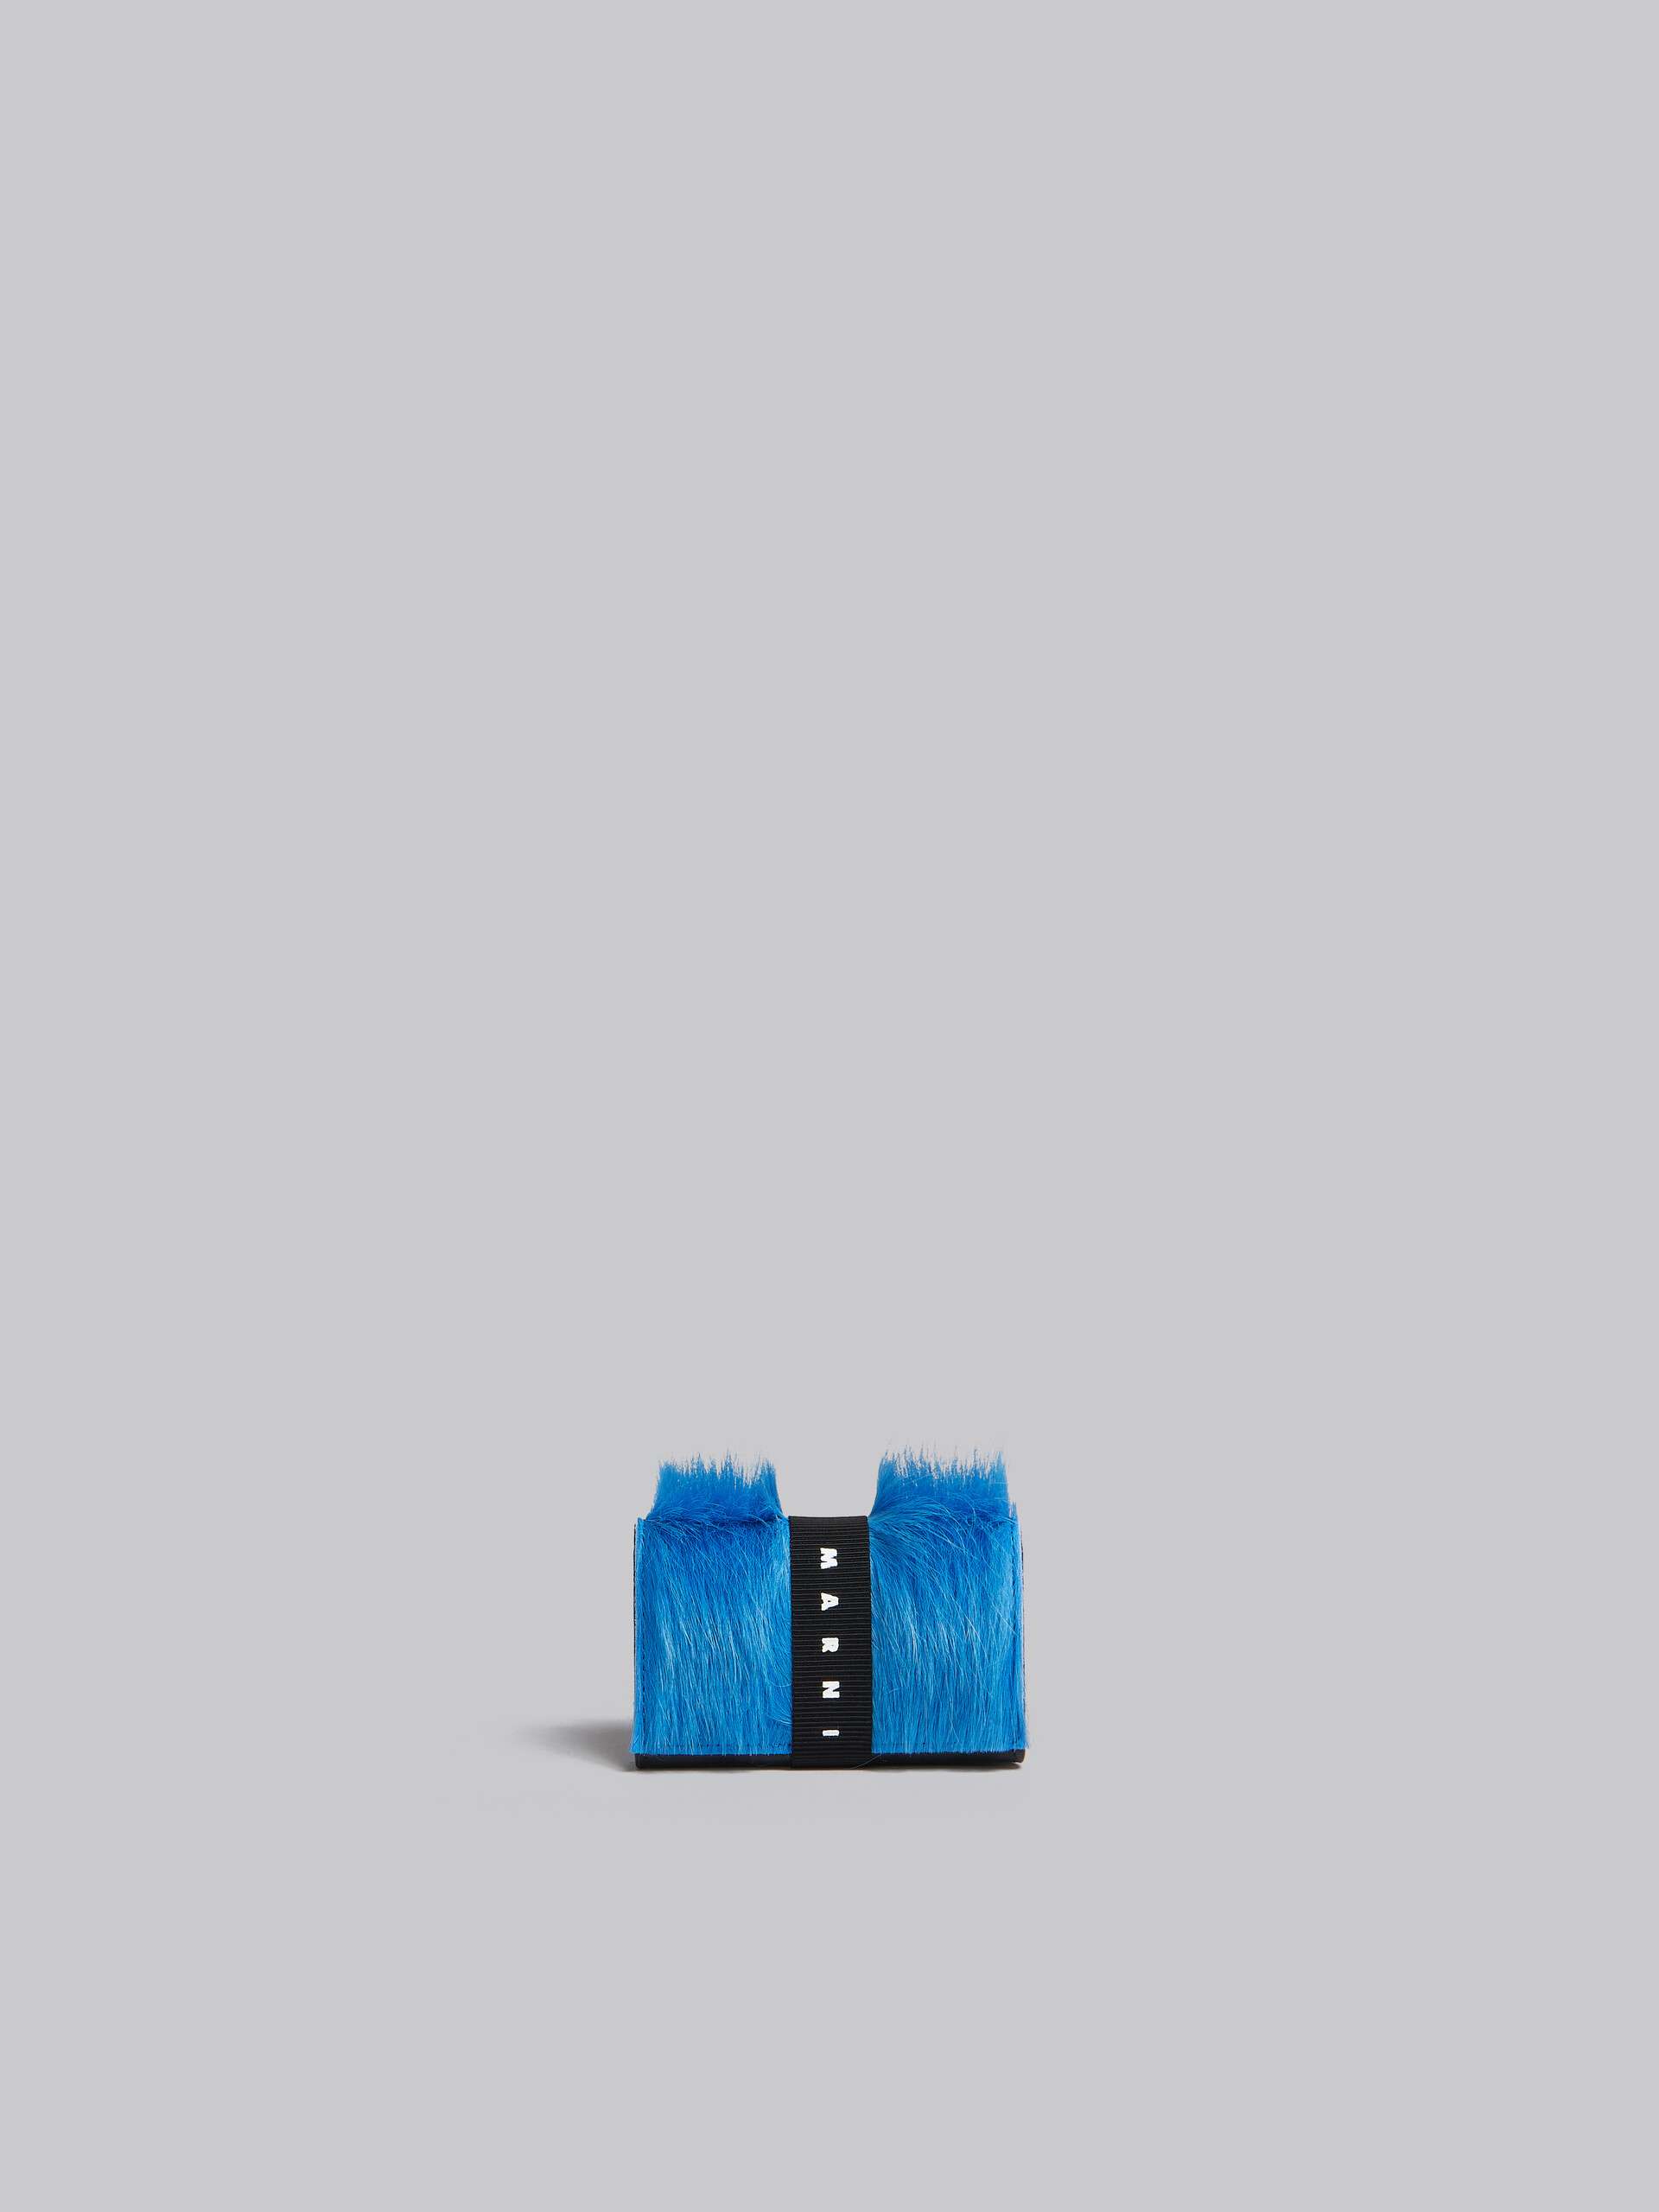 ブルー ロングヘアーカーフスキン製 三つ折りウォレット、ロゴストラップ付き - 財布 - Image 3